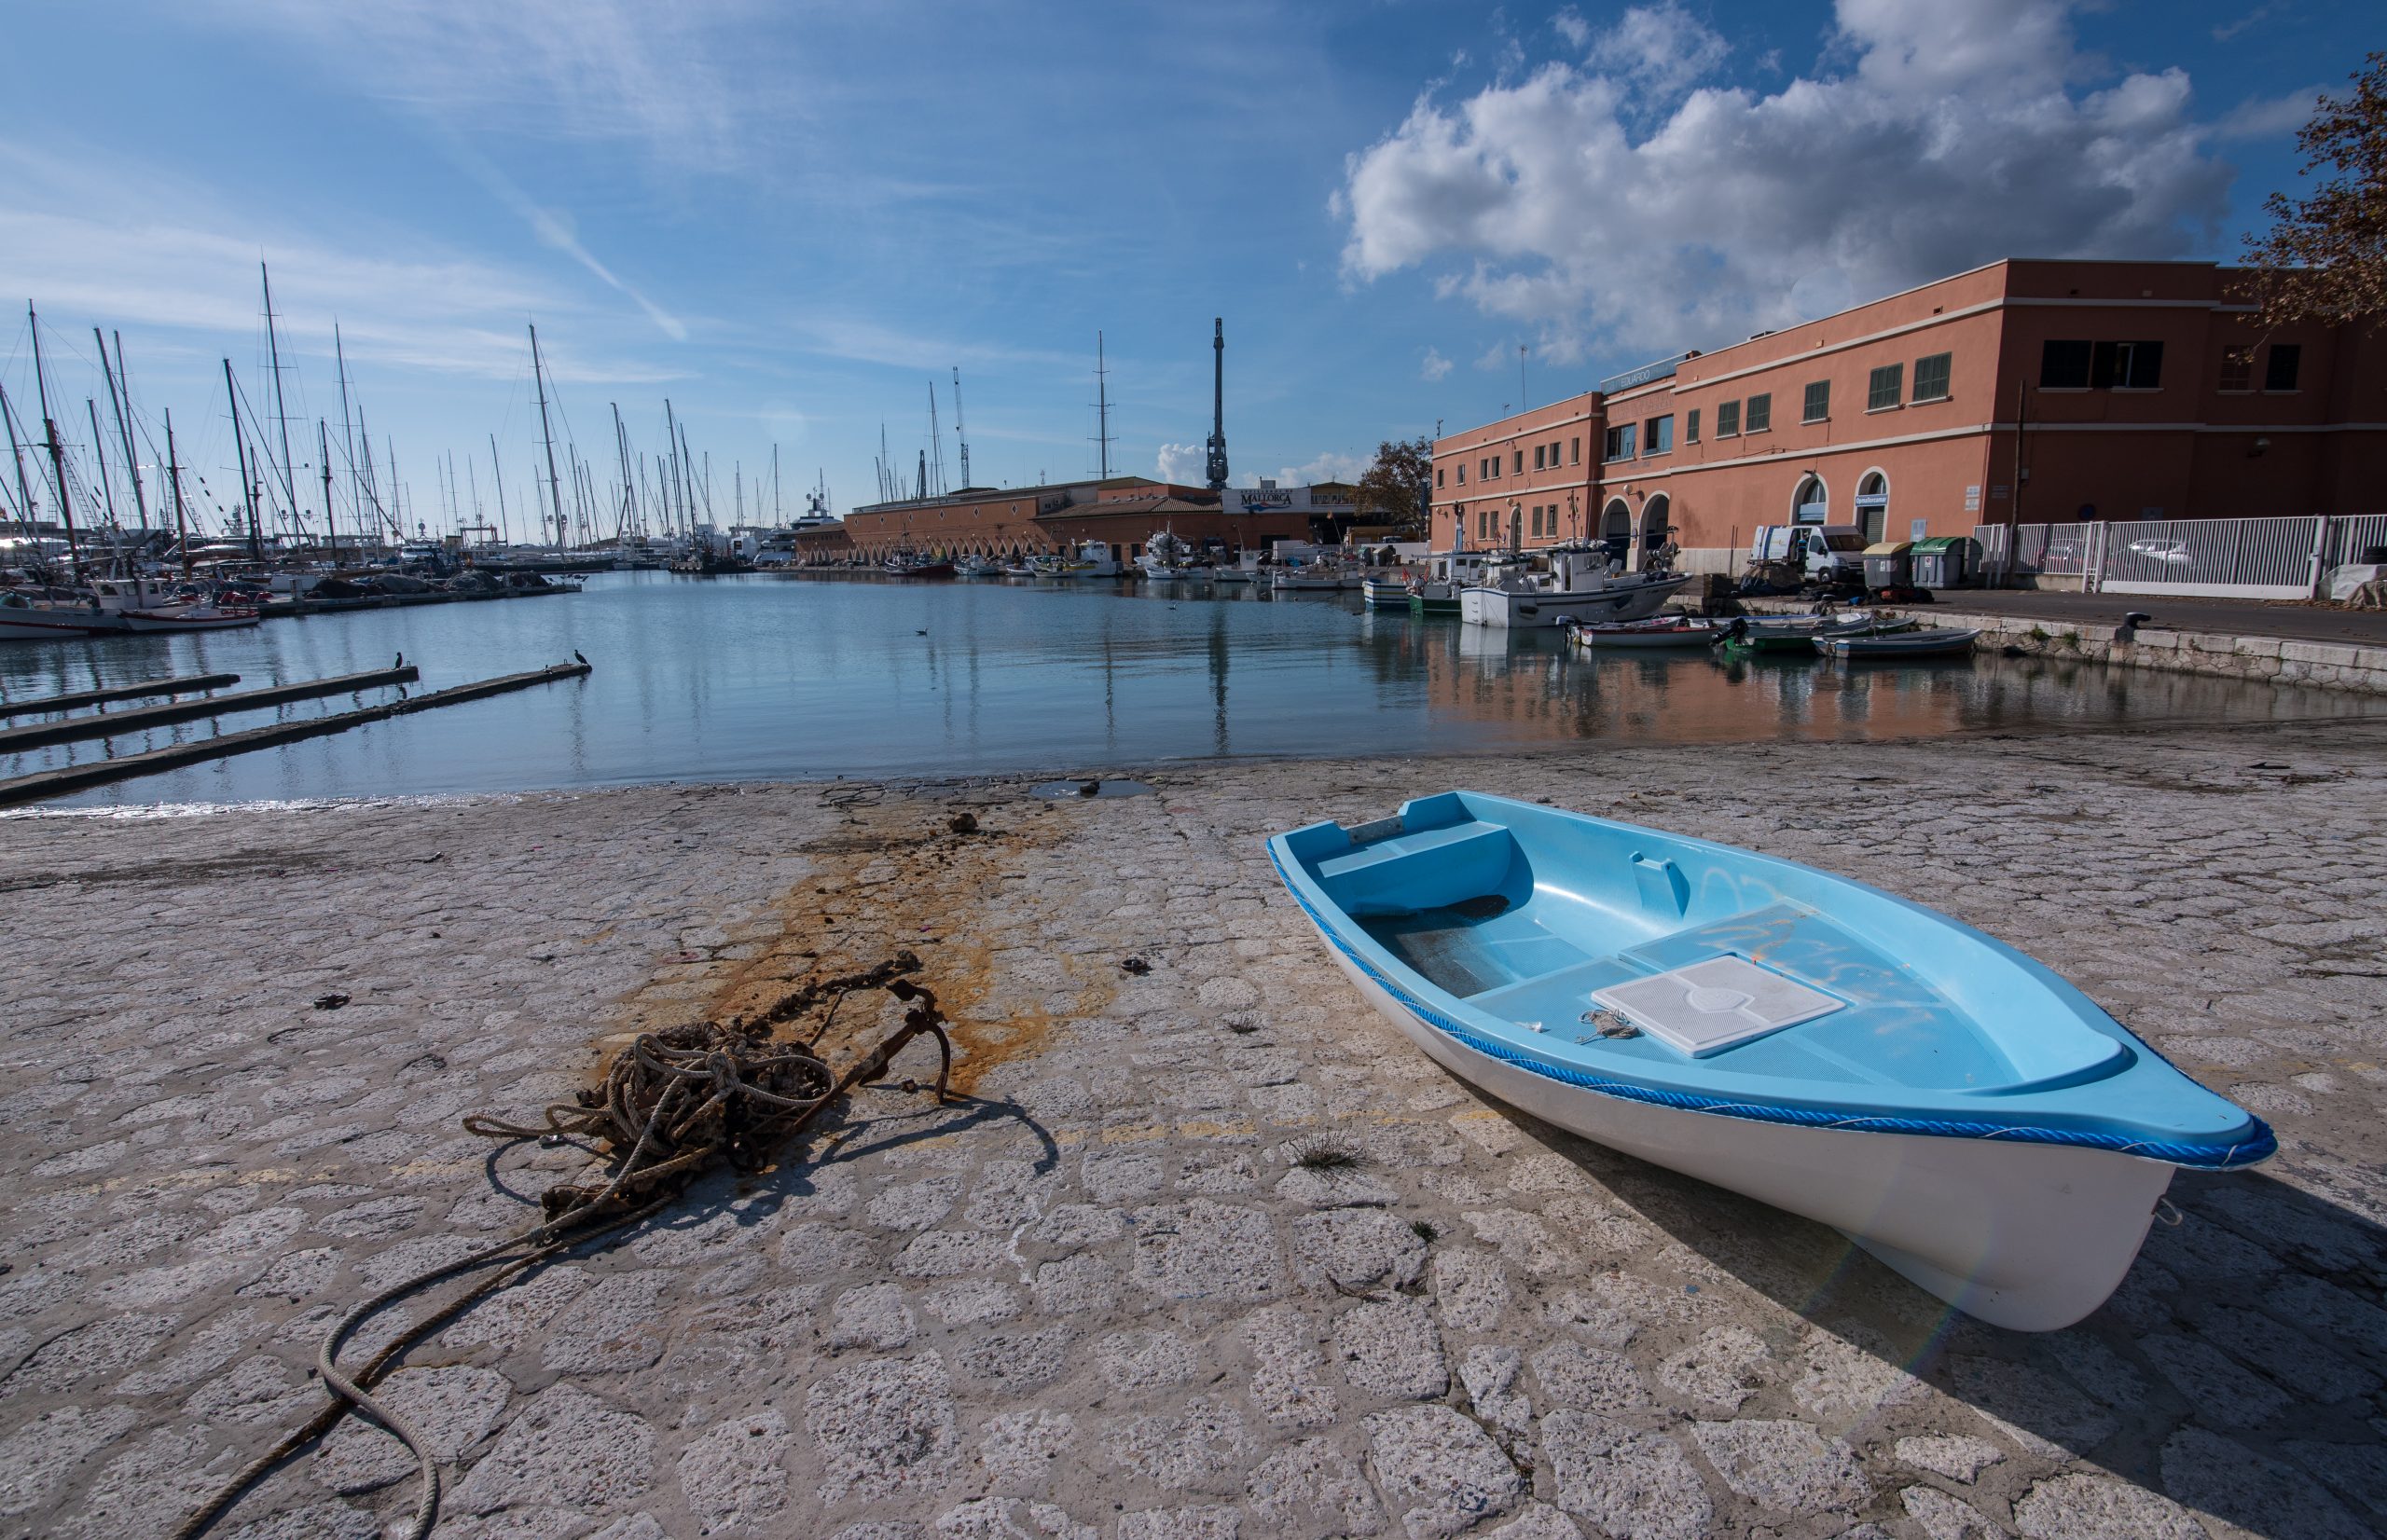 Ports de les Illes Balears reconeix que les instal·lacions s'hauran d'adaptar a la pujada del nivell de la mar